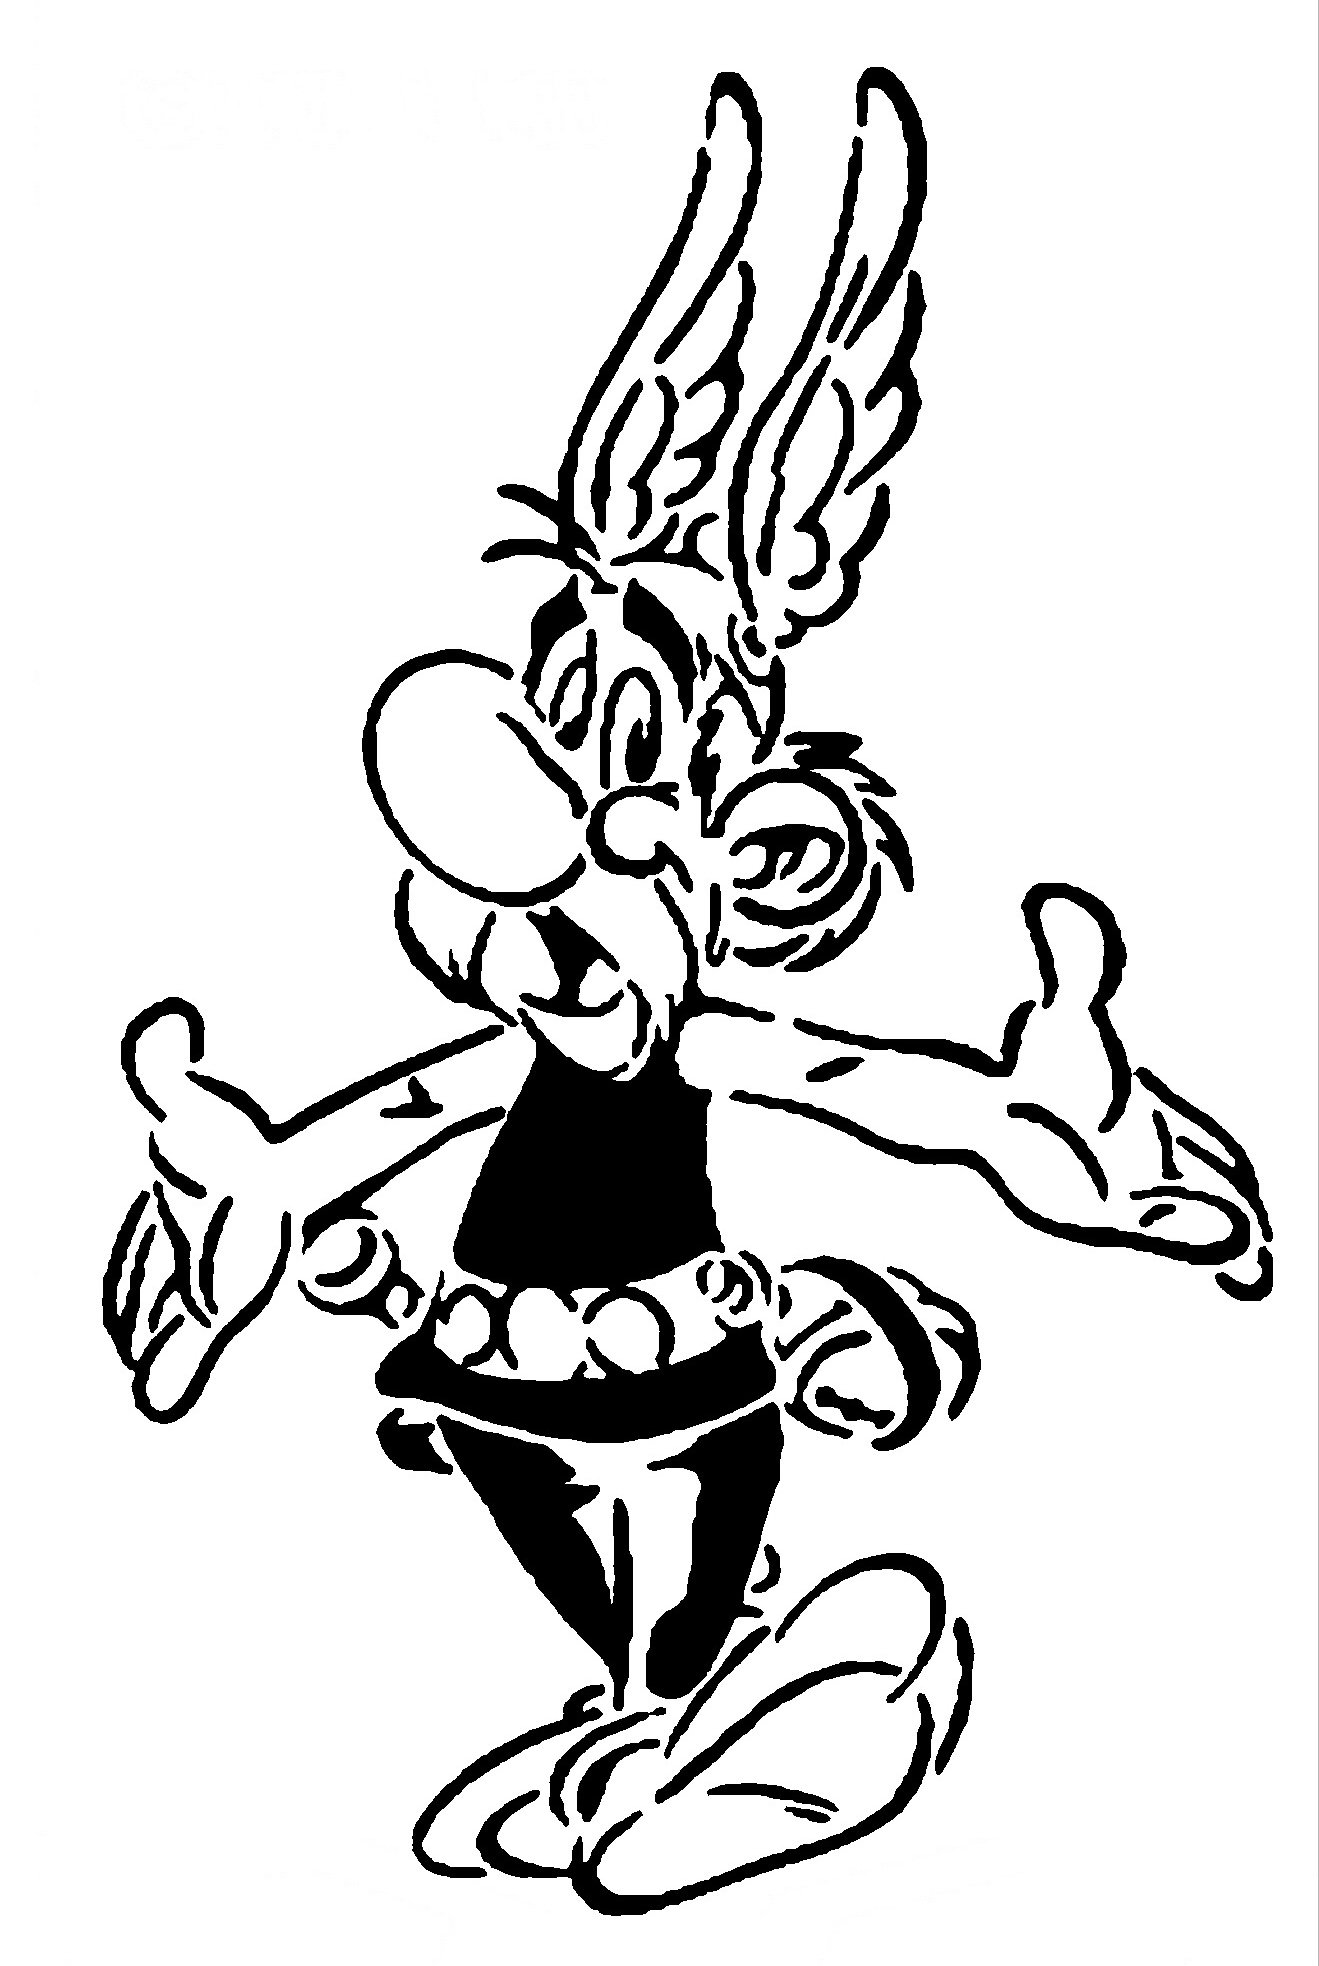 Asterix stencil